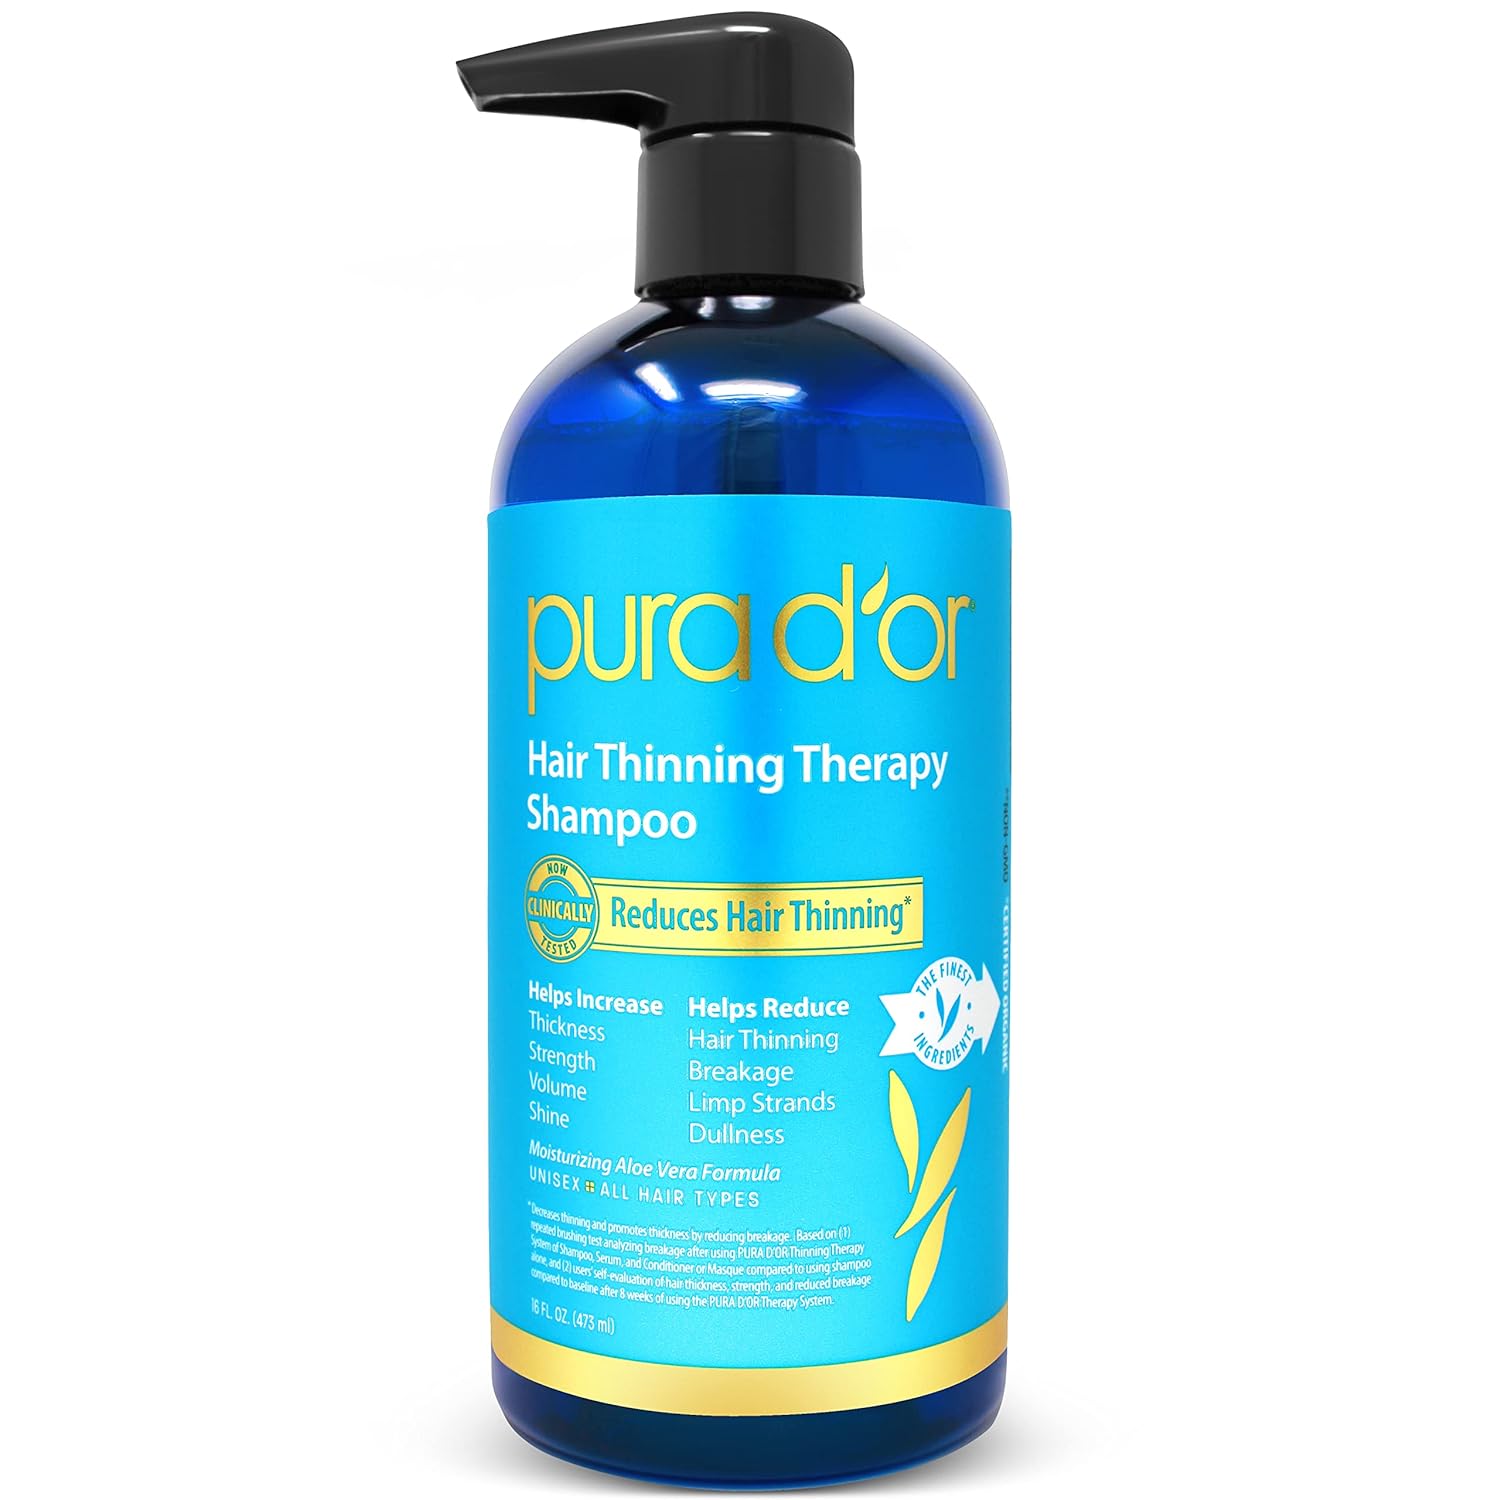 Pura D’or Anti-Hair Loss Shampoo